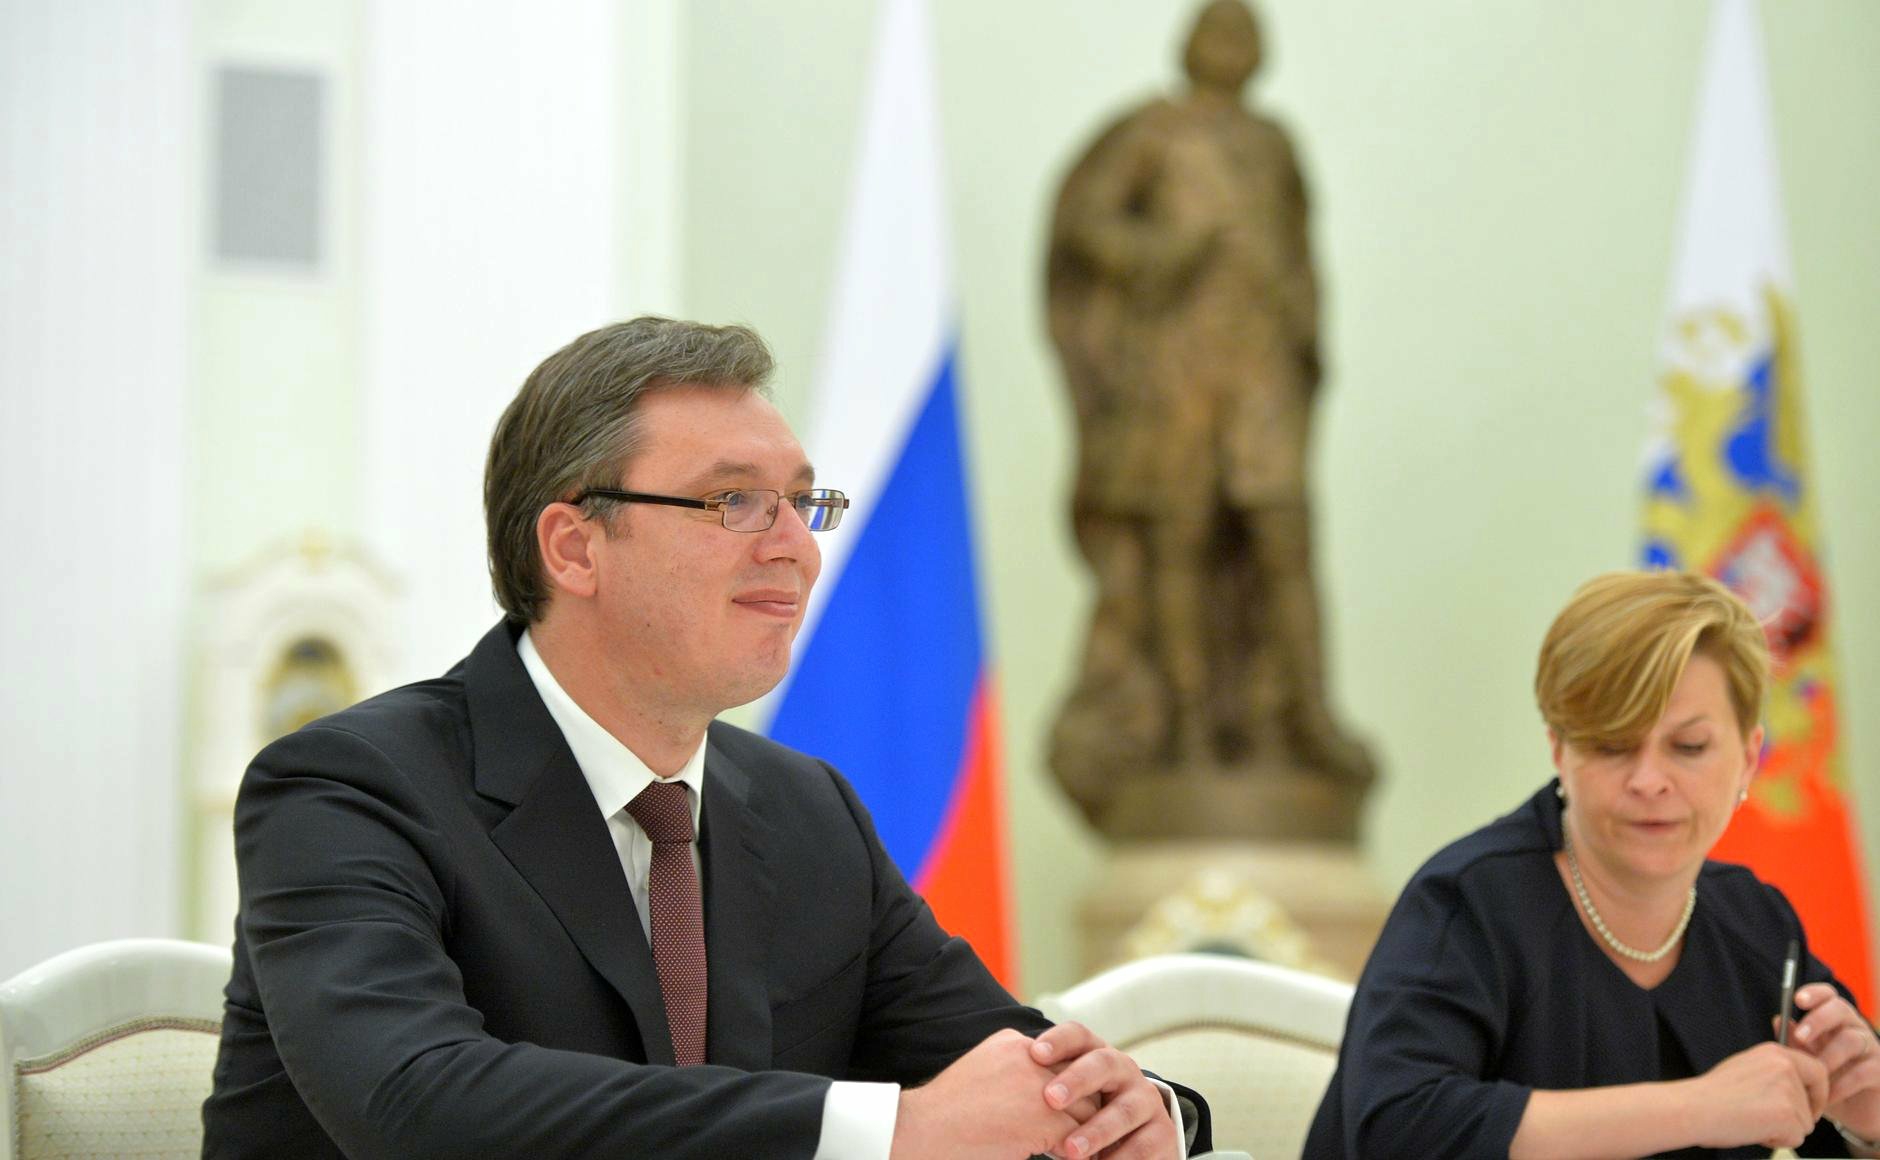 Президент Вучич рассказал о переговорах с «Рособоронэкспортом» Фото: © GLOBAL LOOK press/Kremlin Pool